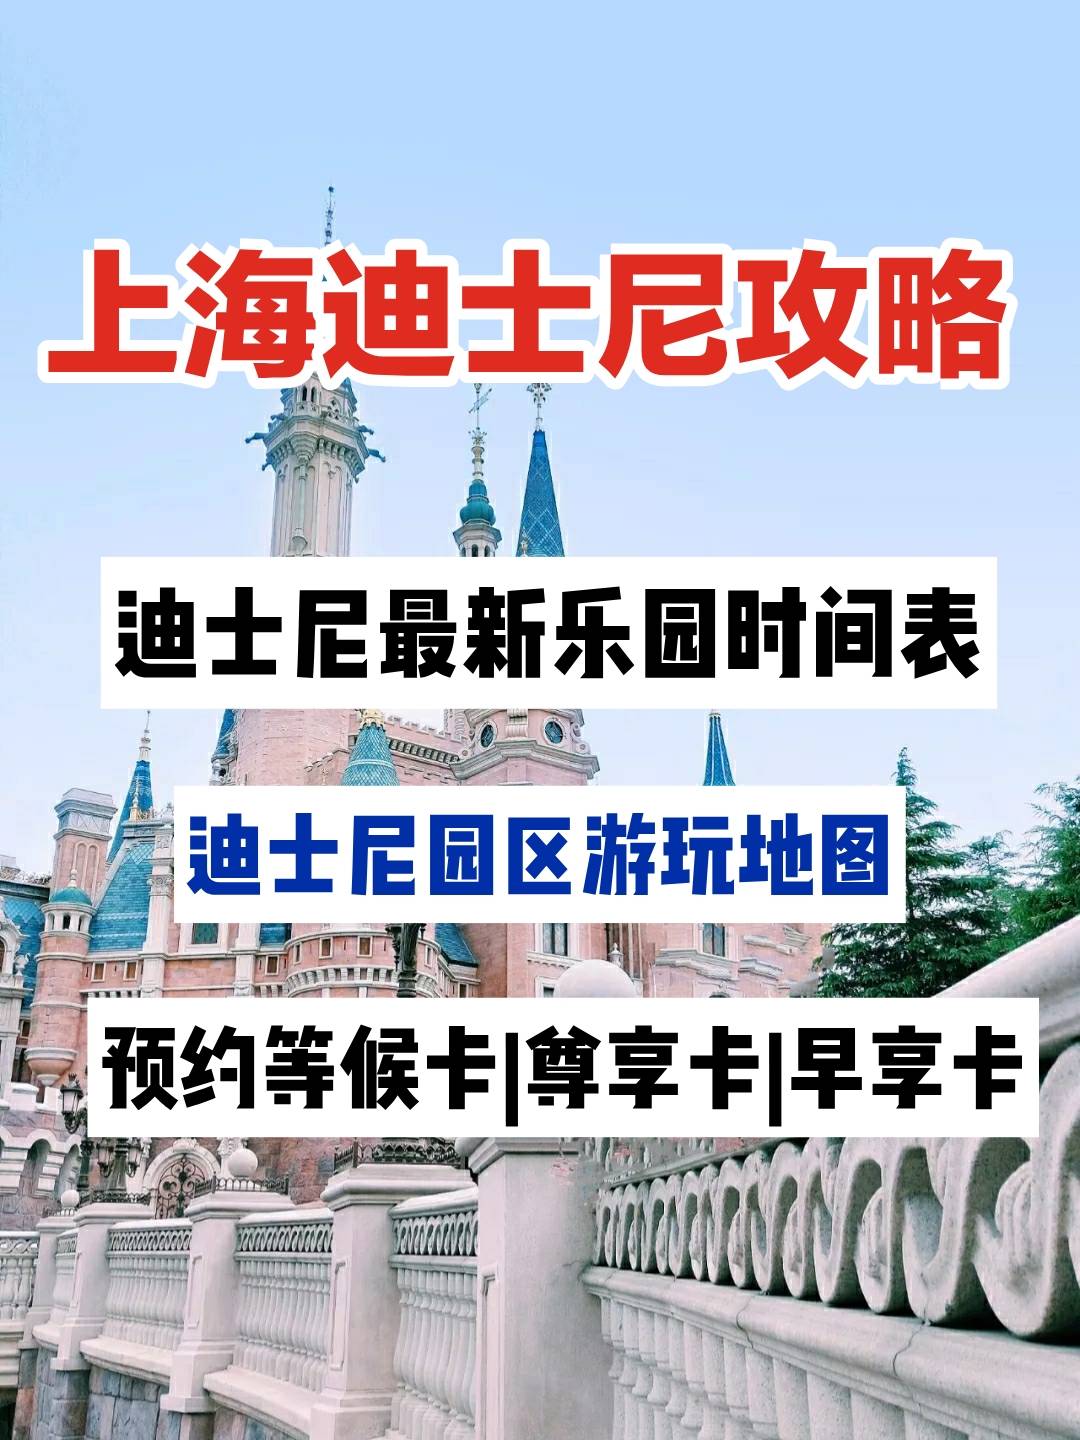 上海迪士尼清明节旅游攻略最新乐园时间表上海迪士尼行李寄存